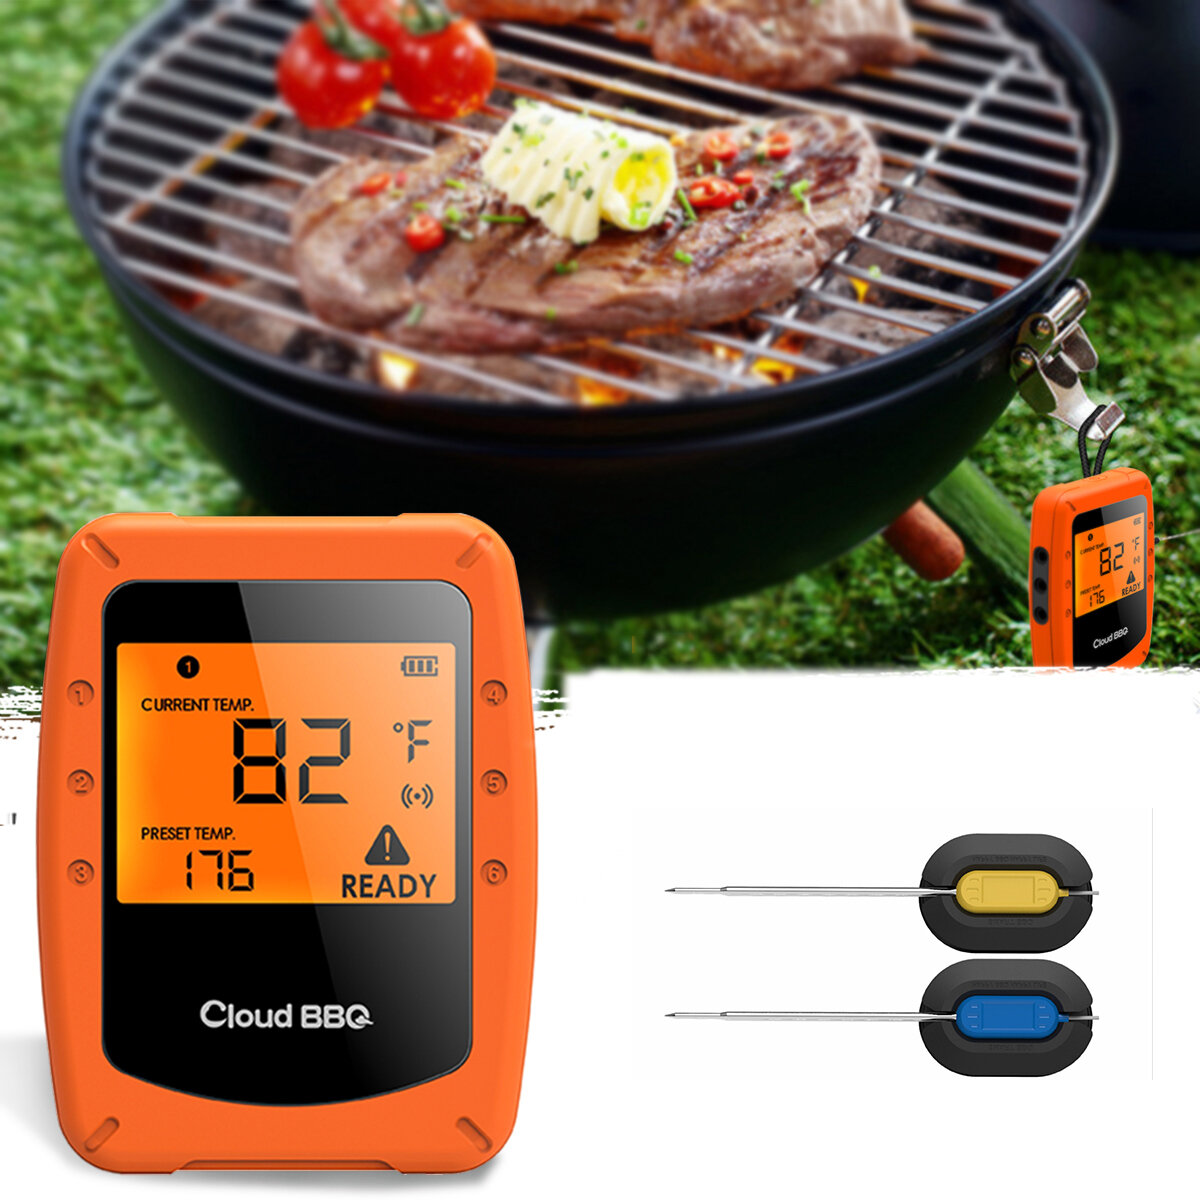 2 беспроводных умных термометра для барбекю и духовки с подключением по Bluetooth и Wifi для IOS и Android